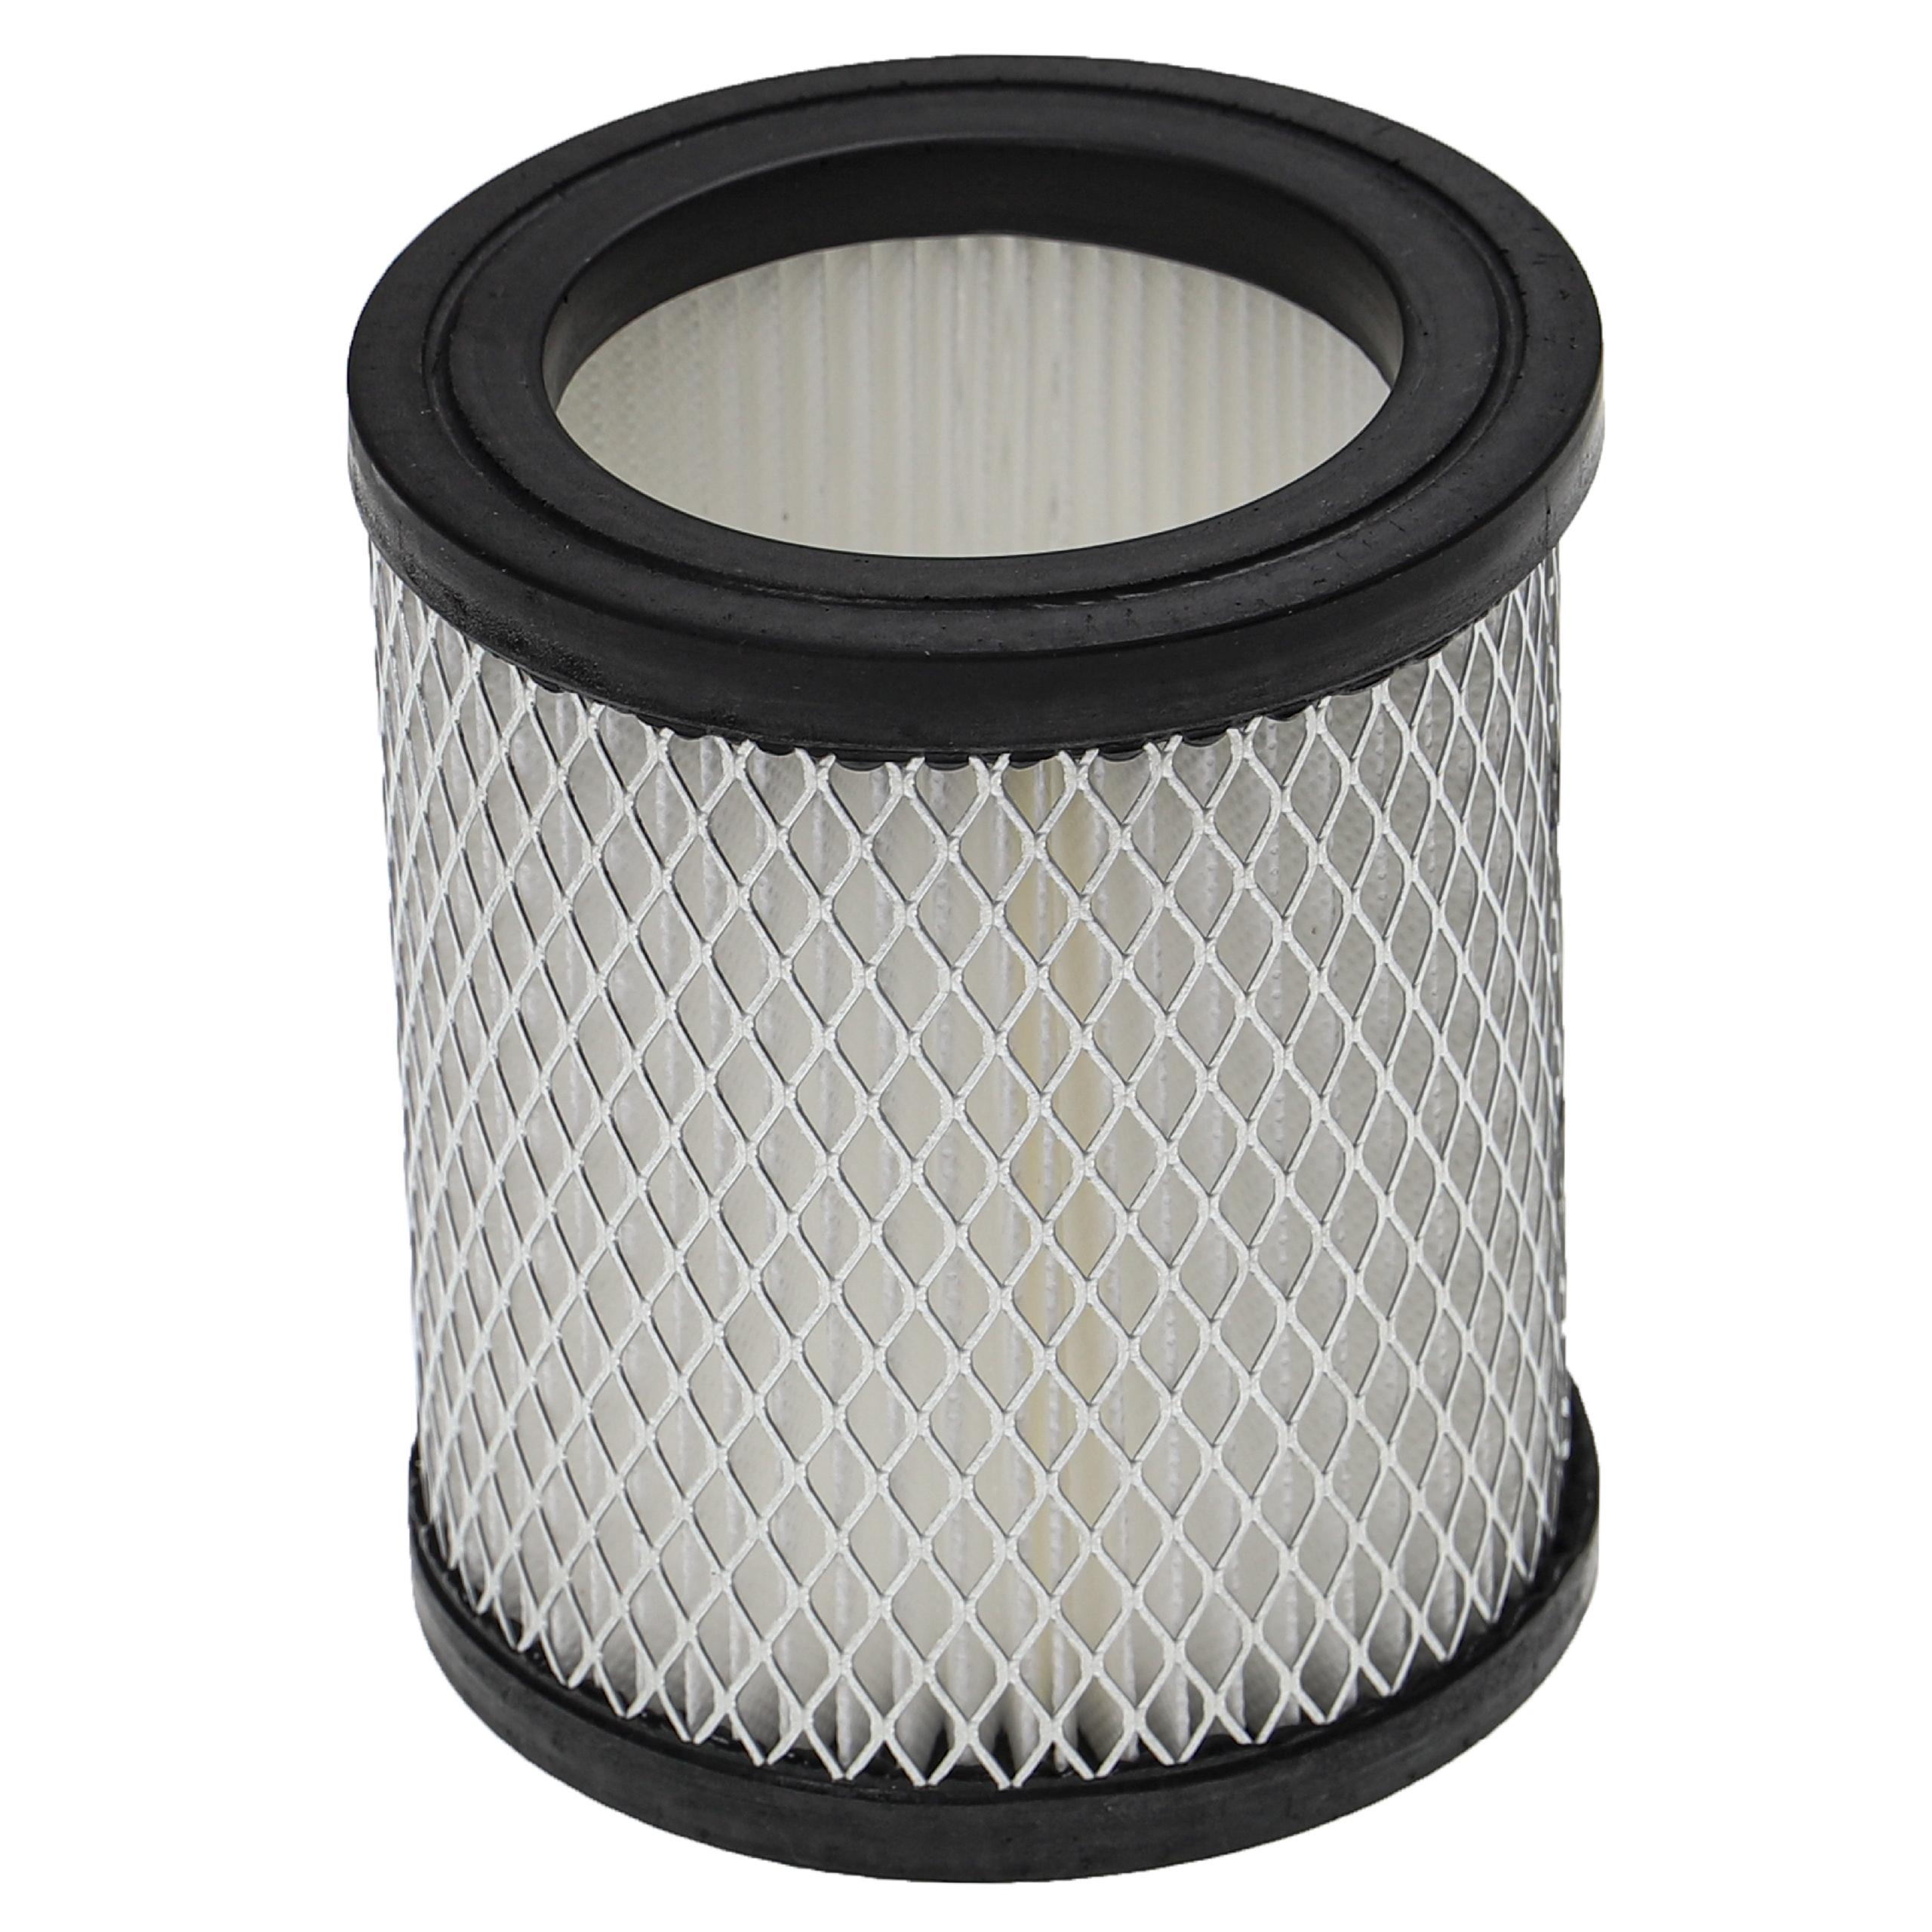 Filtro sostituisce Ruecab 003451 per aspiracenere - filtro HEPA, bianco / argento